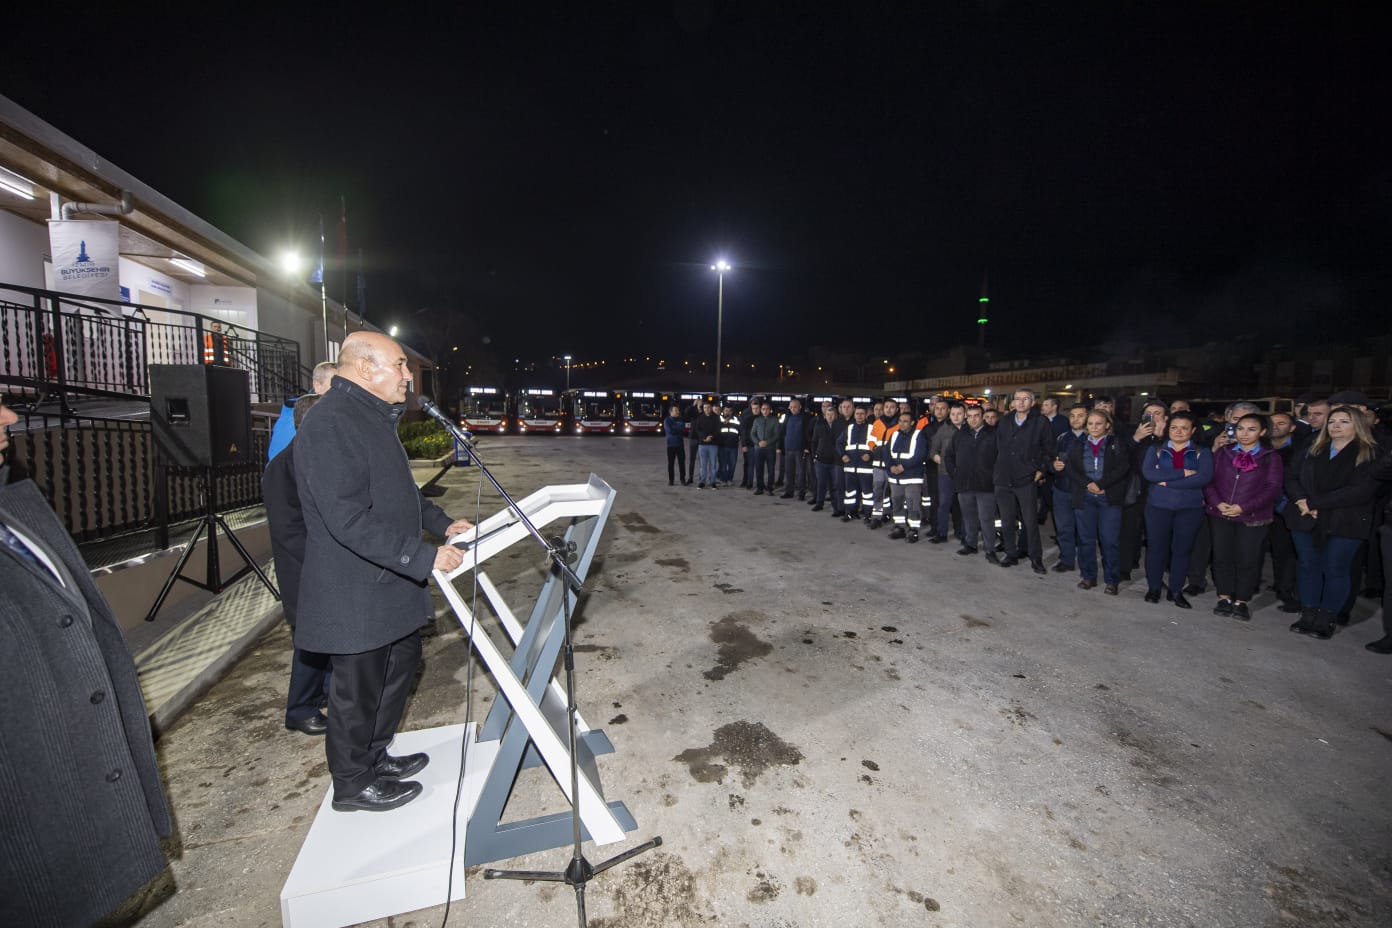 Başkan Soyer, ESHOT emekçilerinin yeni yılını kutladı